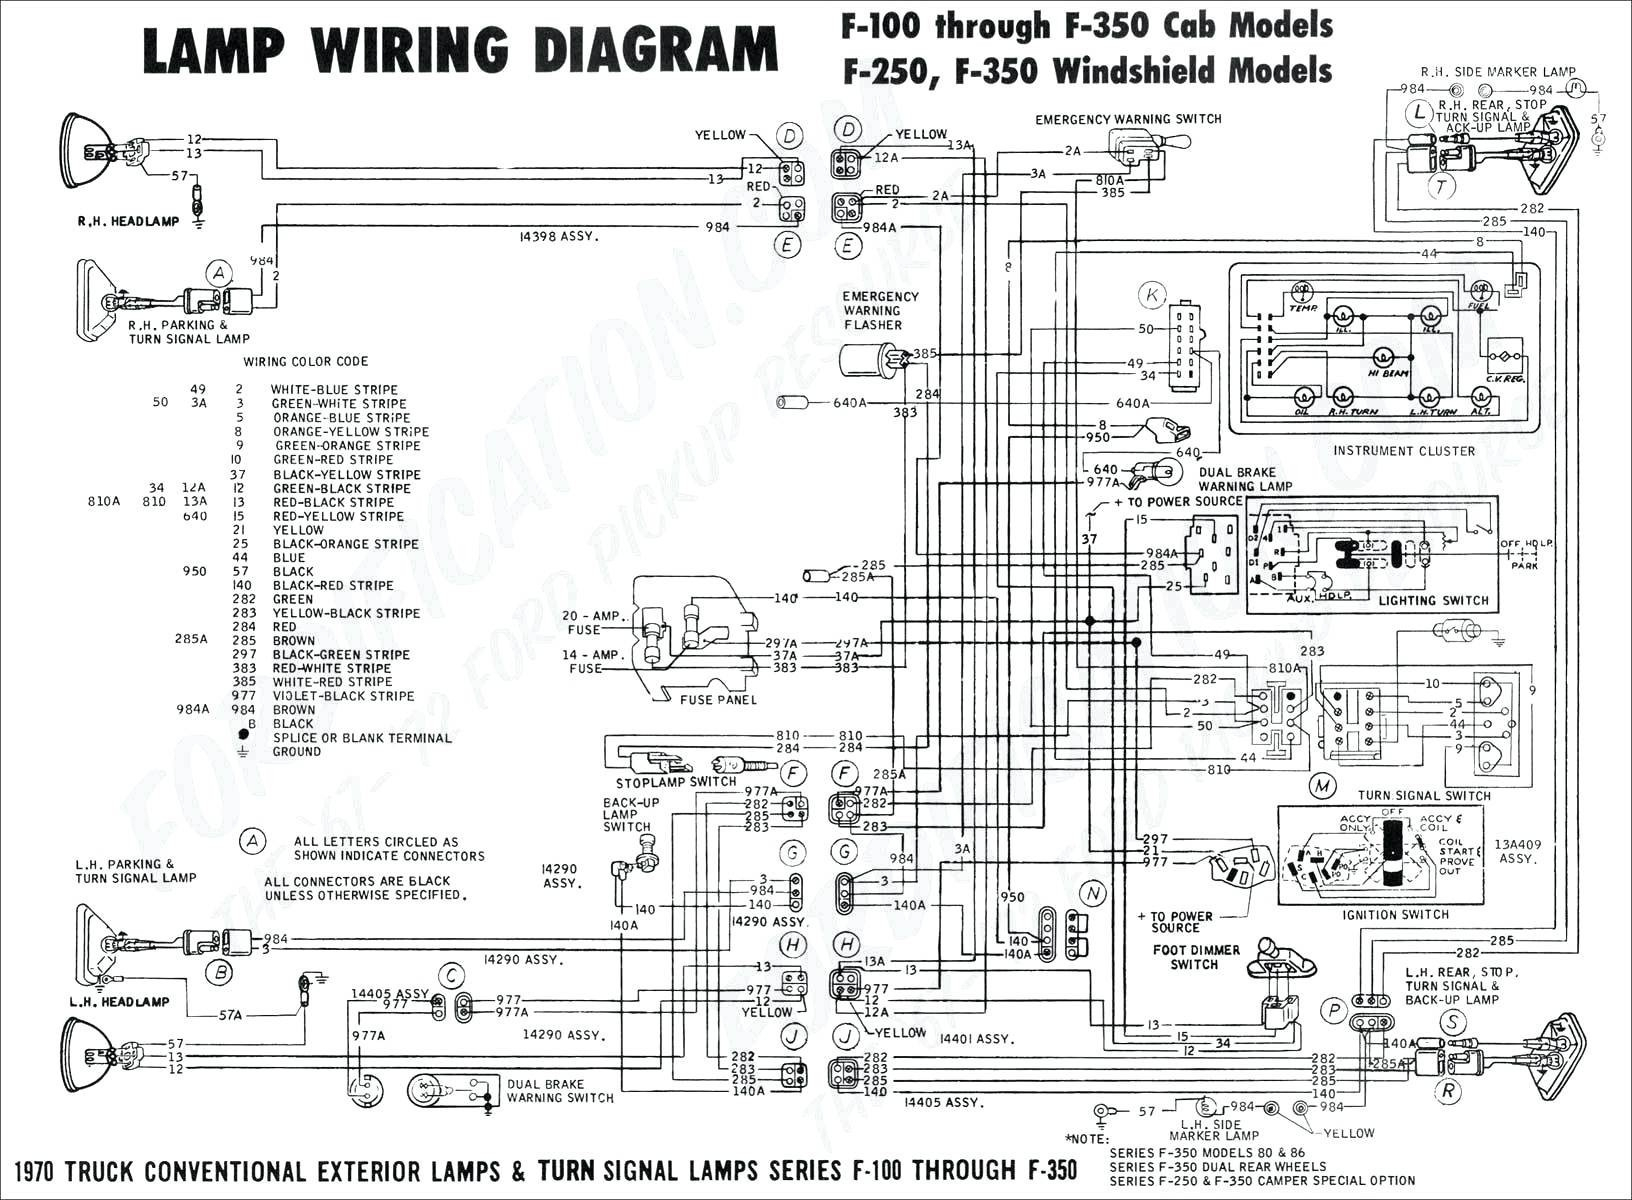 1999 Ford F250 Super Duty Radio Wiring Diagram Free Wiring Diagram